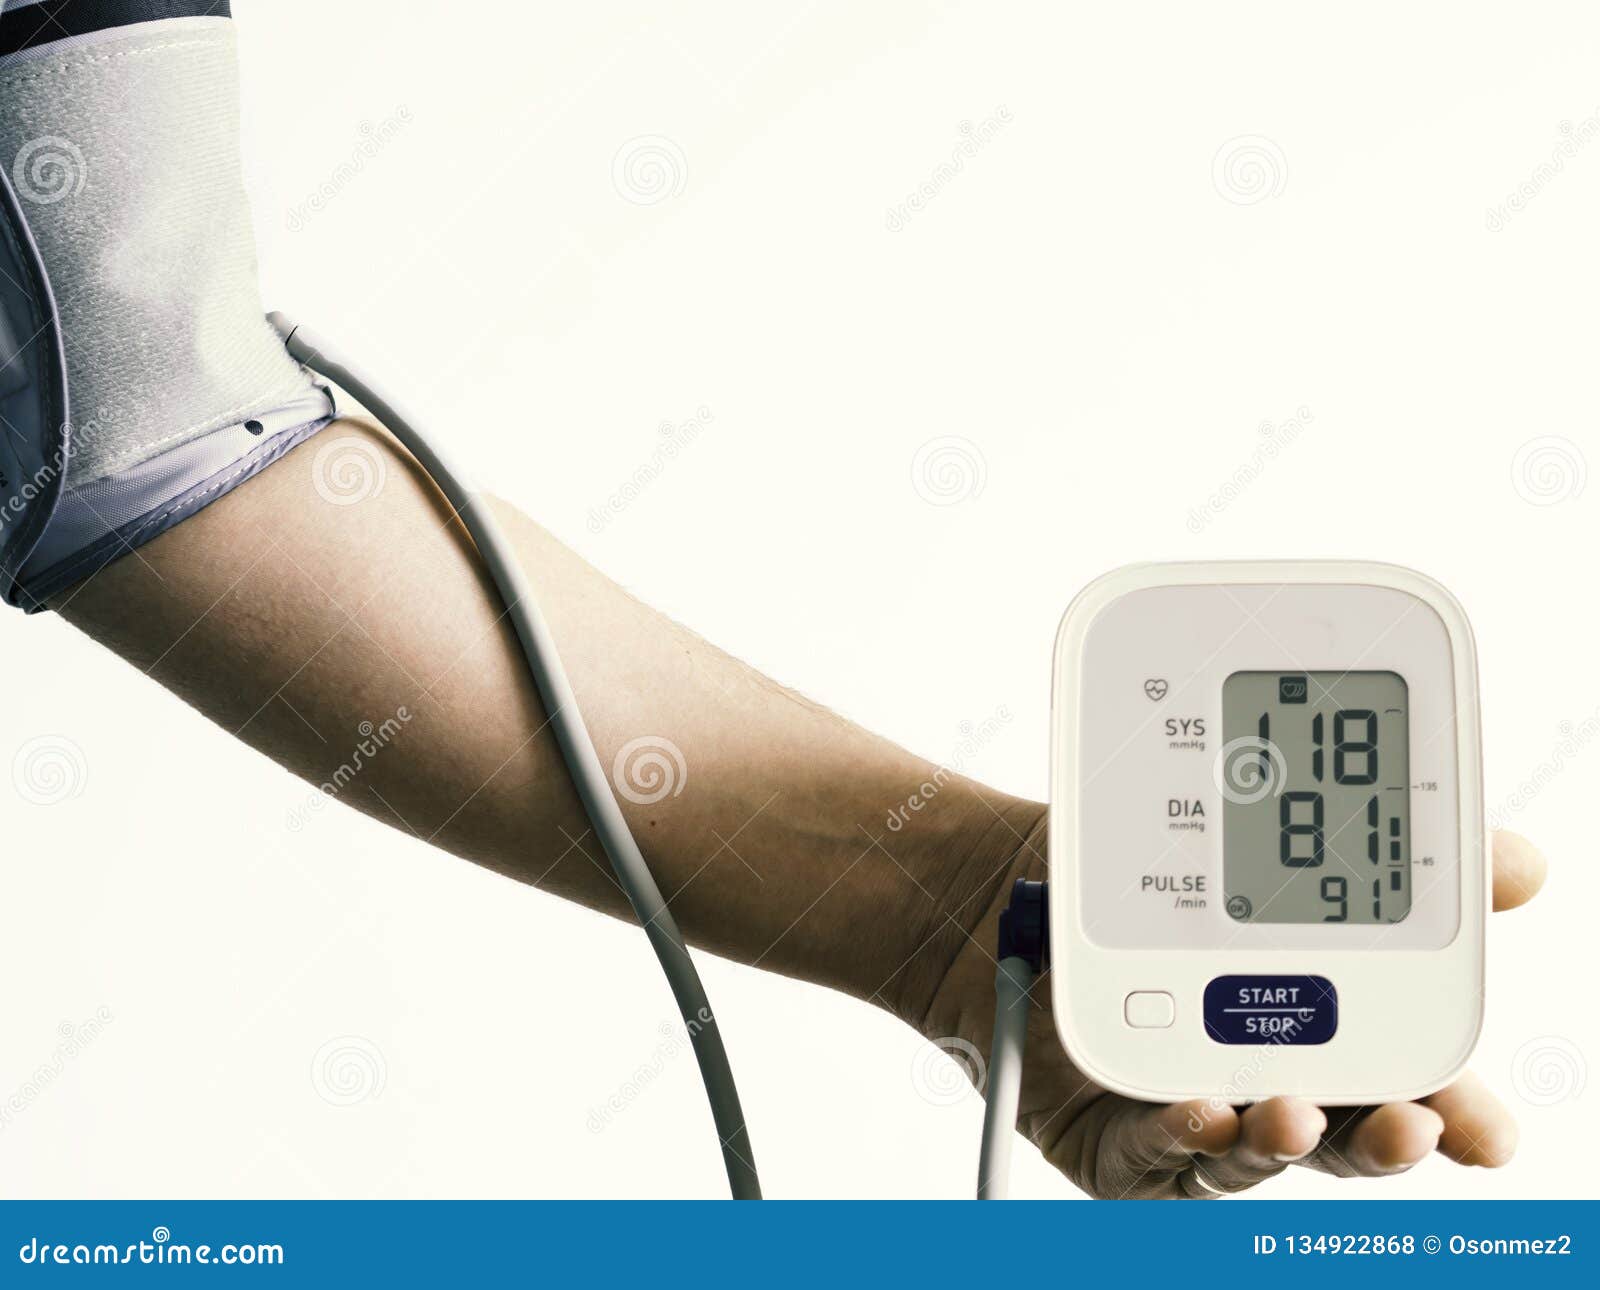 Разница в давлении на разных руках. Digital Blood Pressure Monitor. Разное давление на руках и ногах. Мединский терморегуляторы на руку для давления. Давление на руке и наноге индекс.